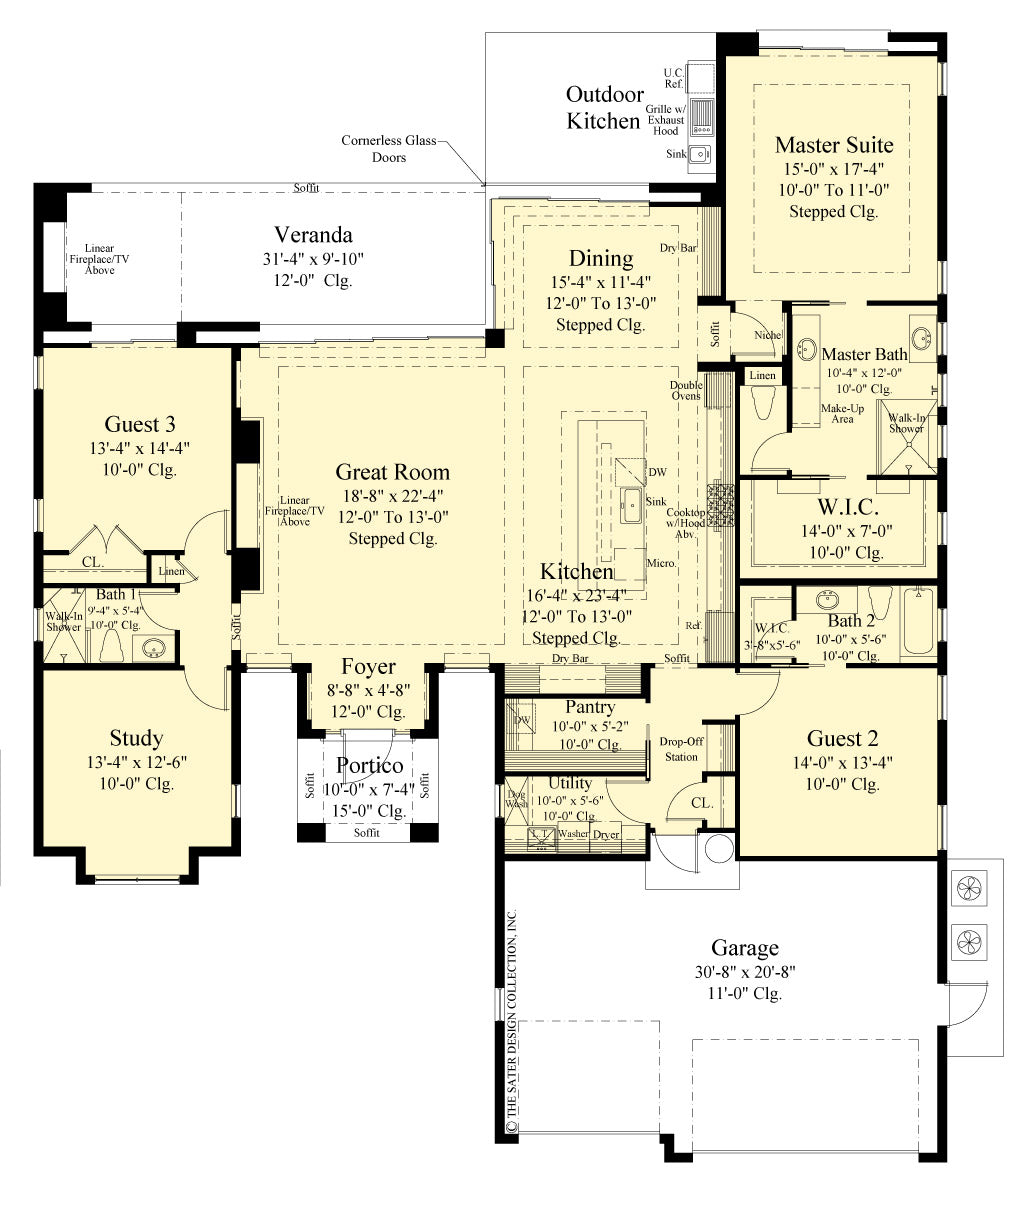 4 bedroom ranch house floor plans